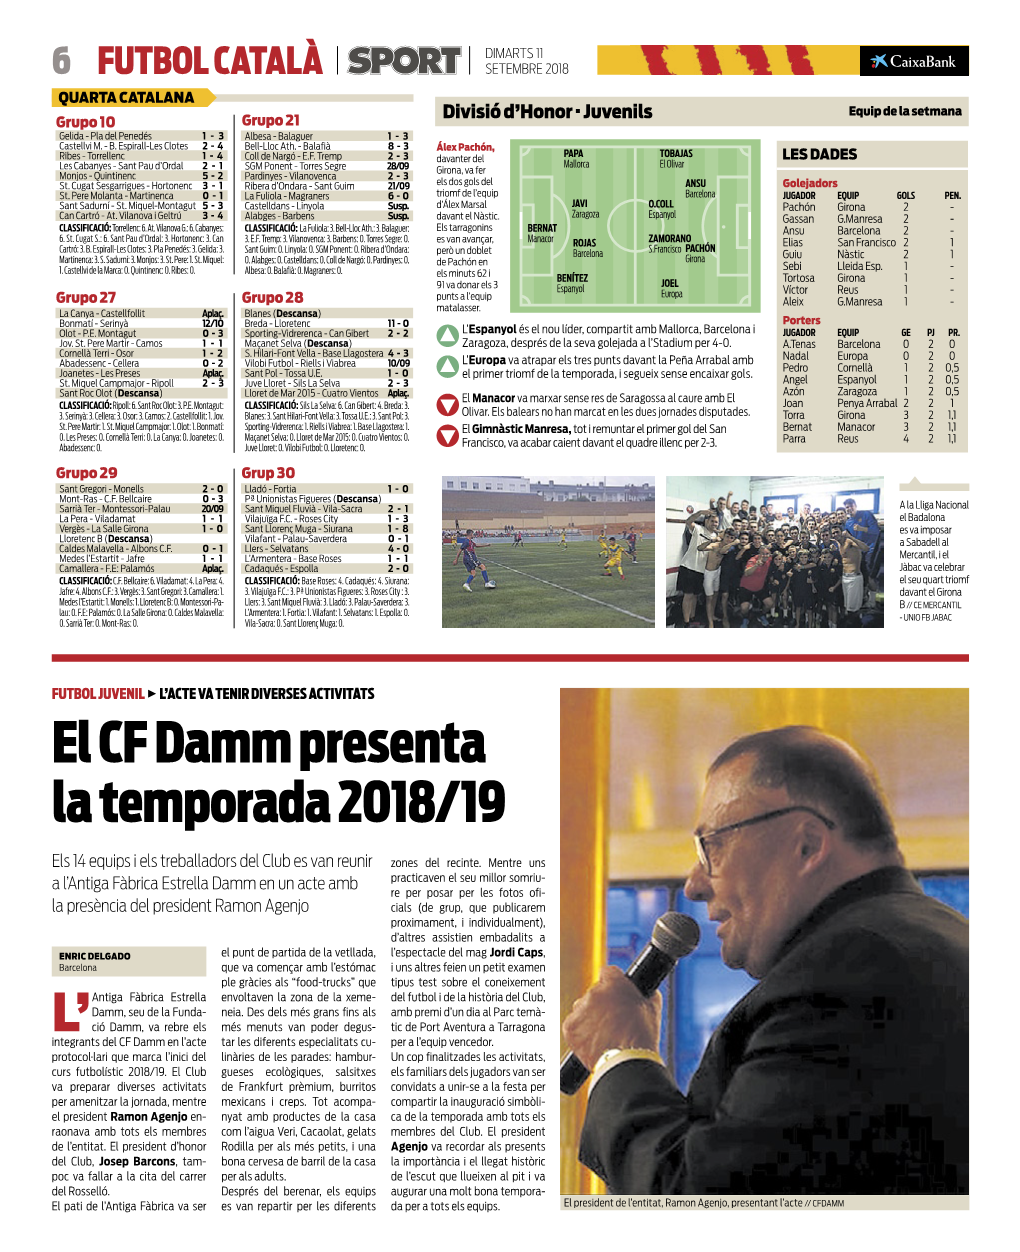 El CF Damm Presenta La Temporada 2018/19